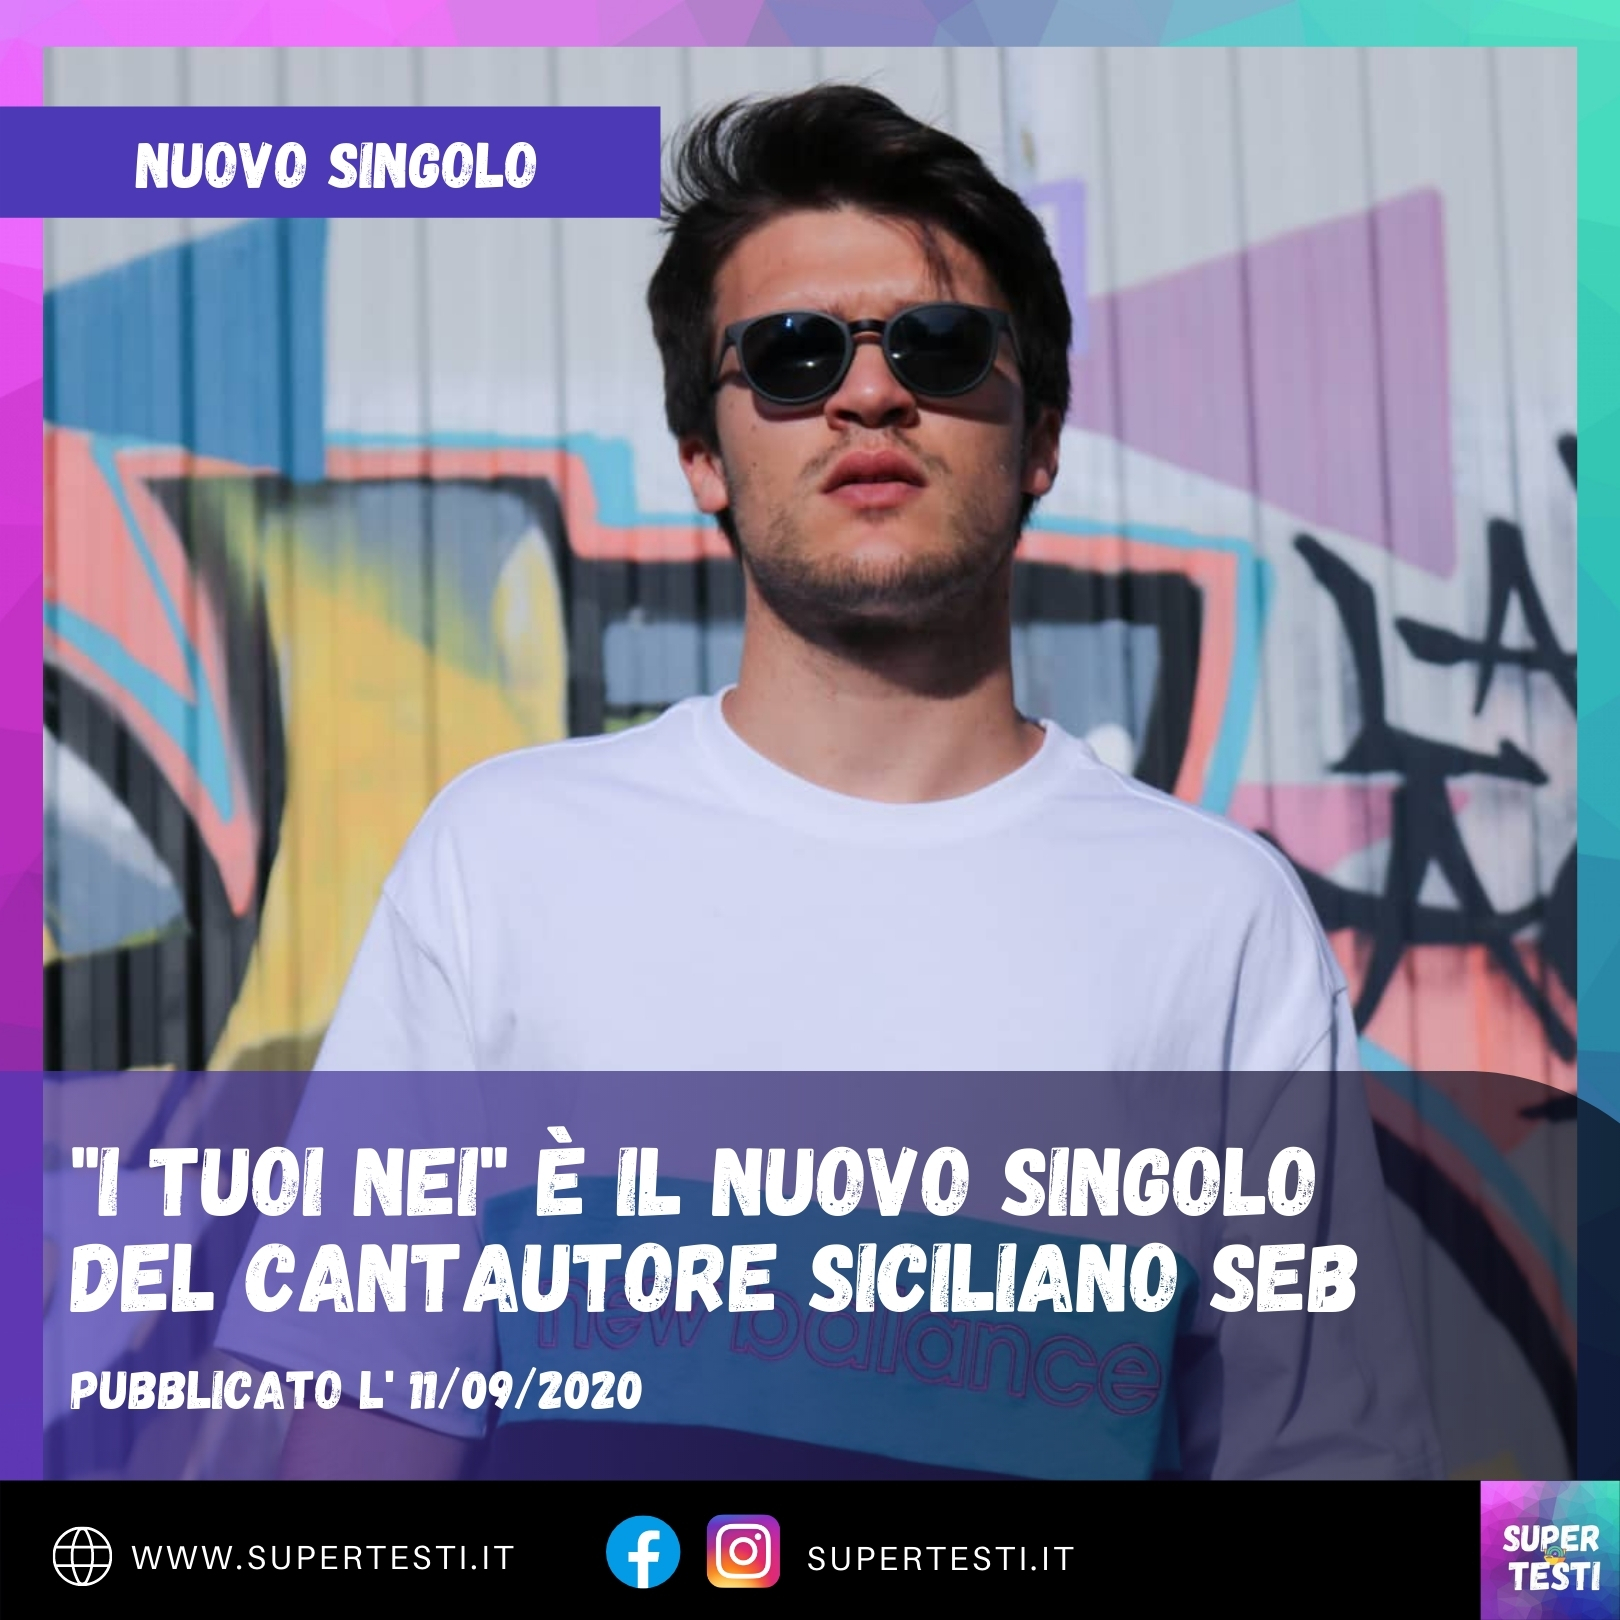 "I Tuoi Nei" è il nuovo singolo del cantautore siciliano SEB